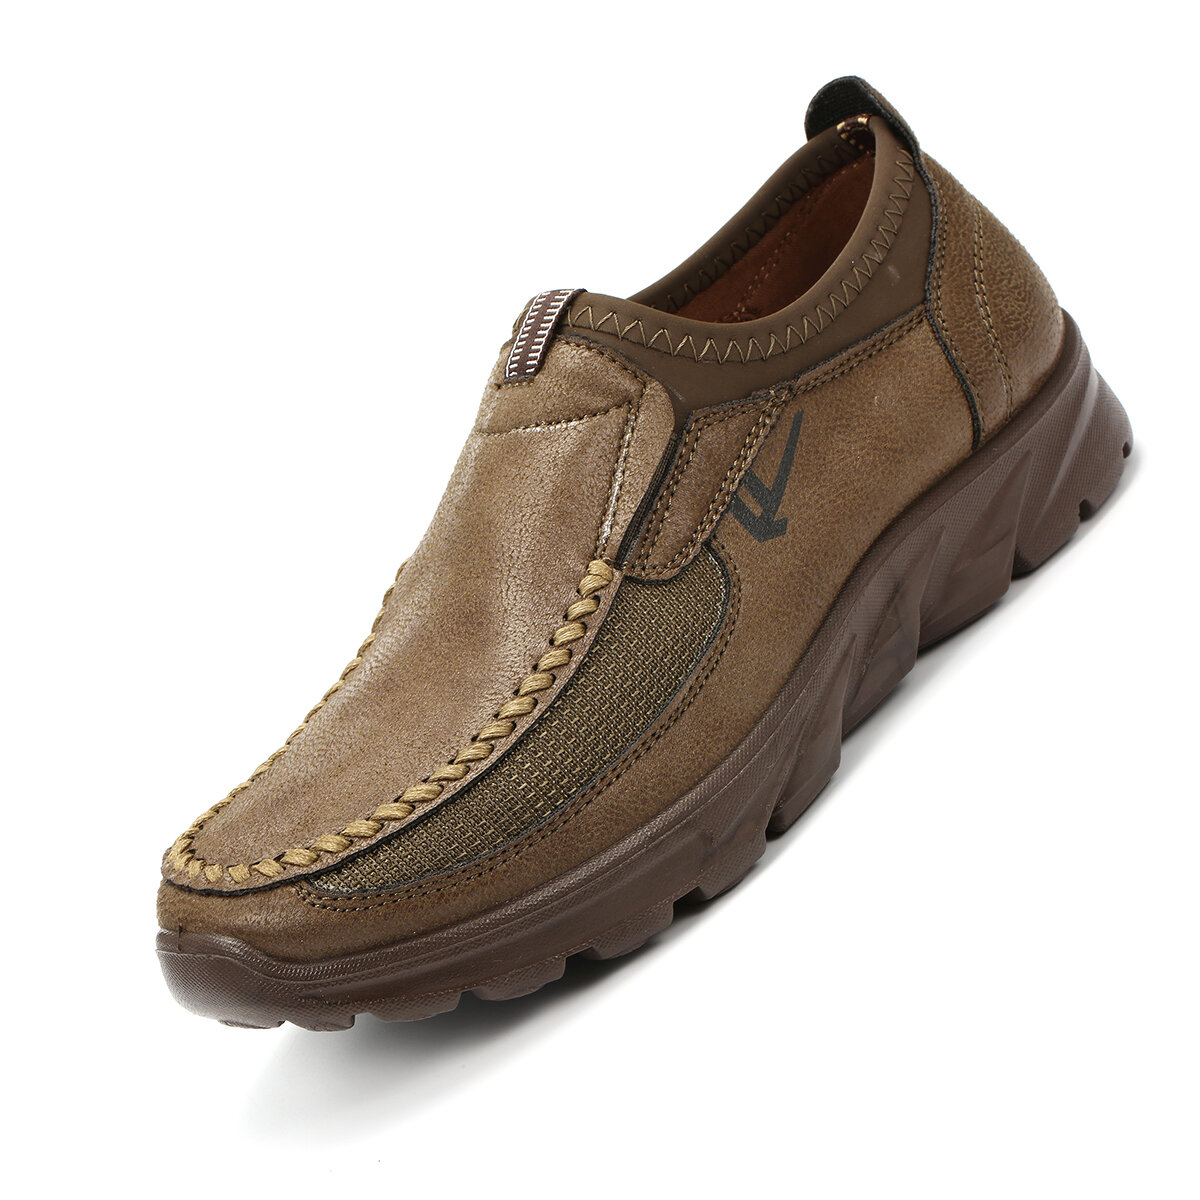 Ανδρικά παπούτσια Casual Flat Loafers Παπούτσια πεζοπορίας για περπάτημα